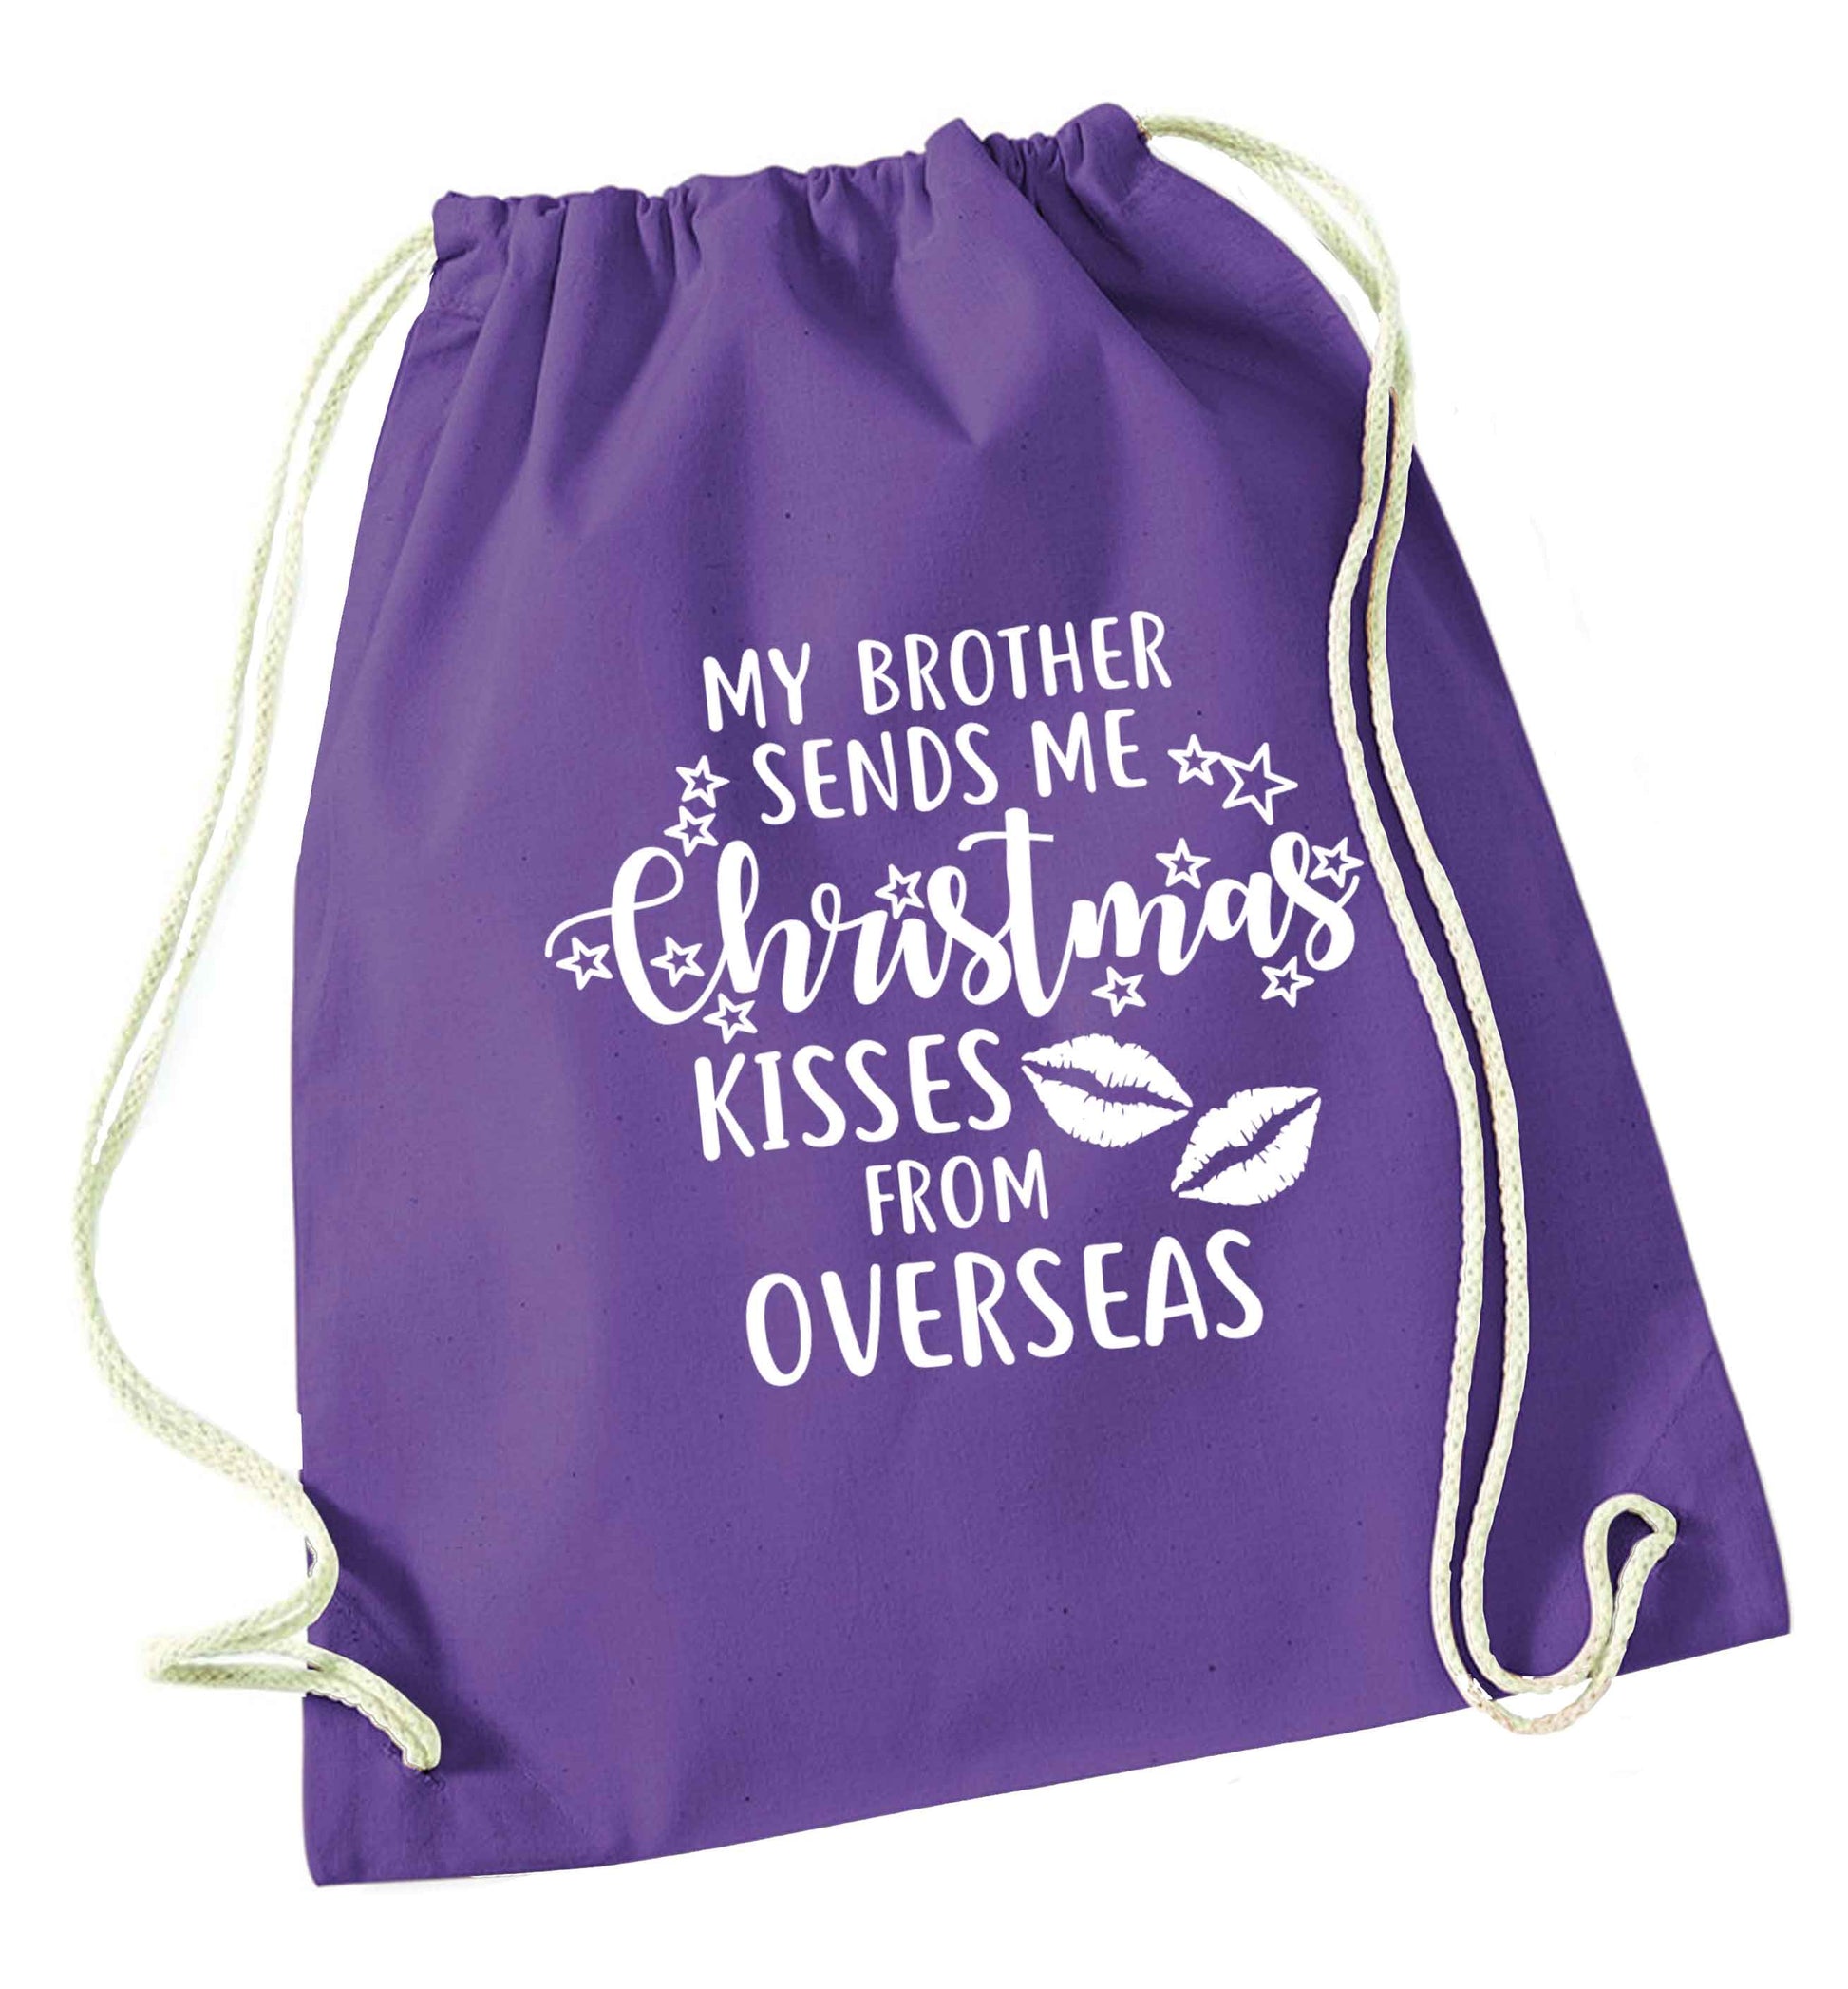 Brother Christmas Kisses Overseas purple drawstring bag